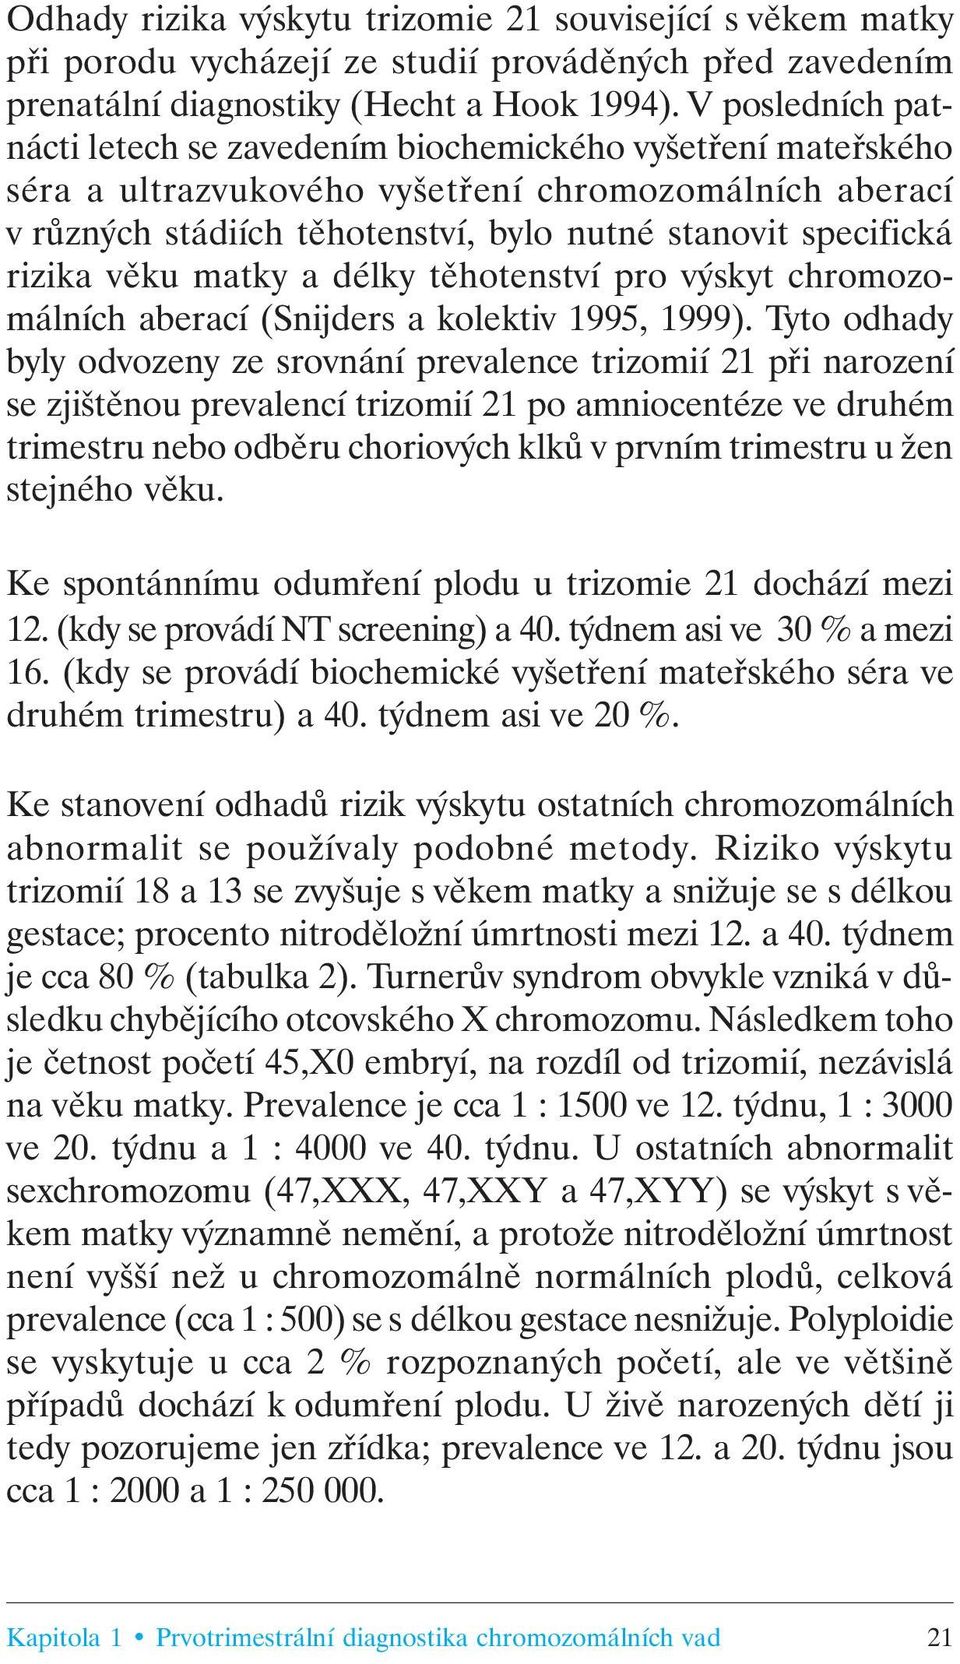 rizika věku matky a délky těhotenství pro výskyt chromozomálních aberací (Snijders a kolektiv 1995, 1999).